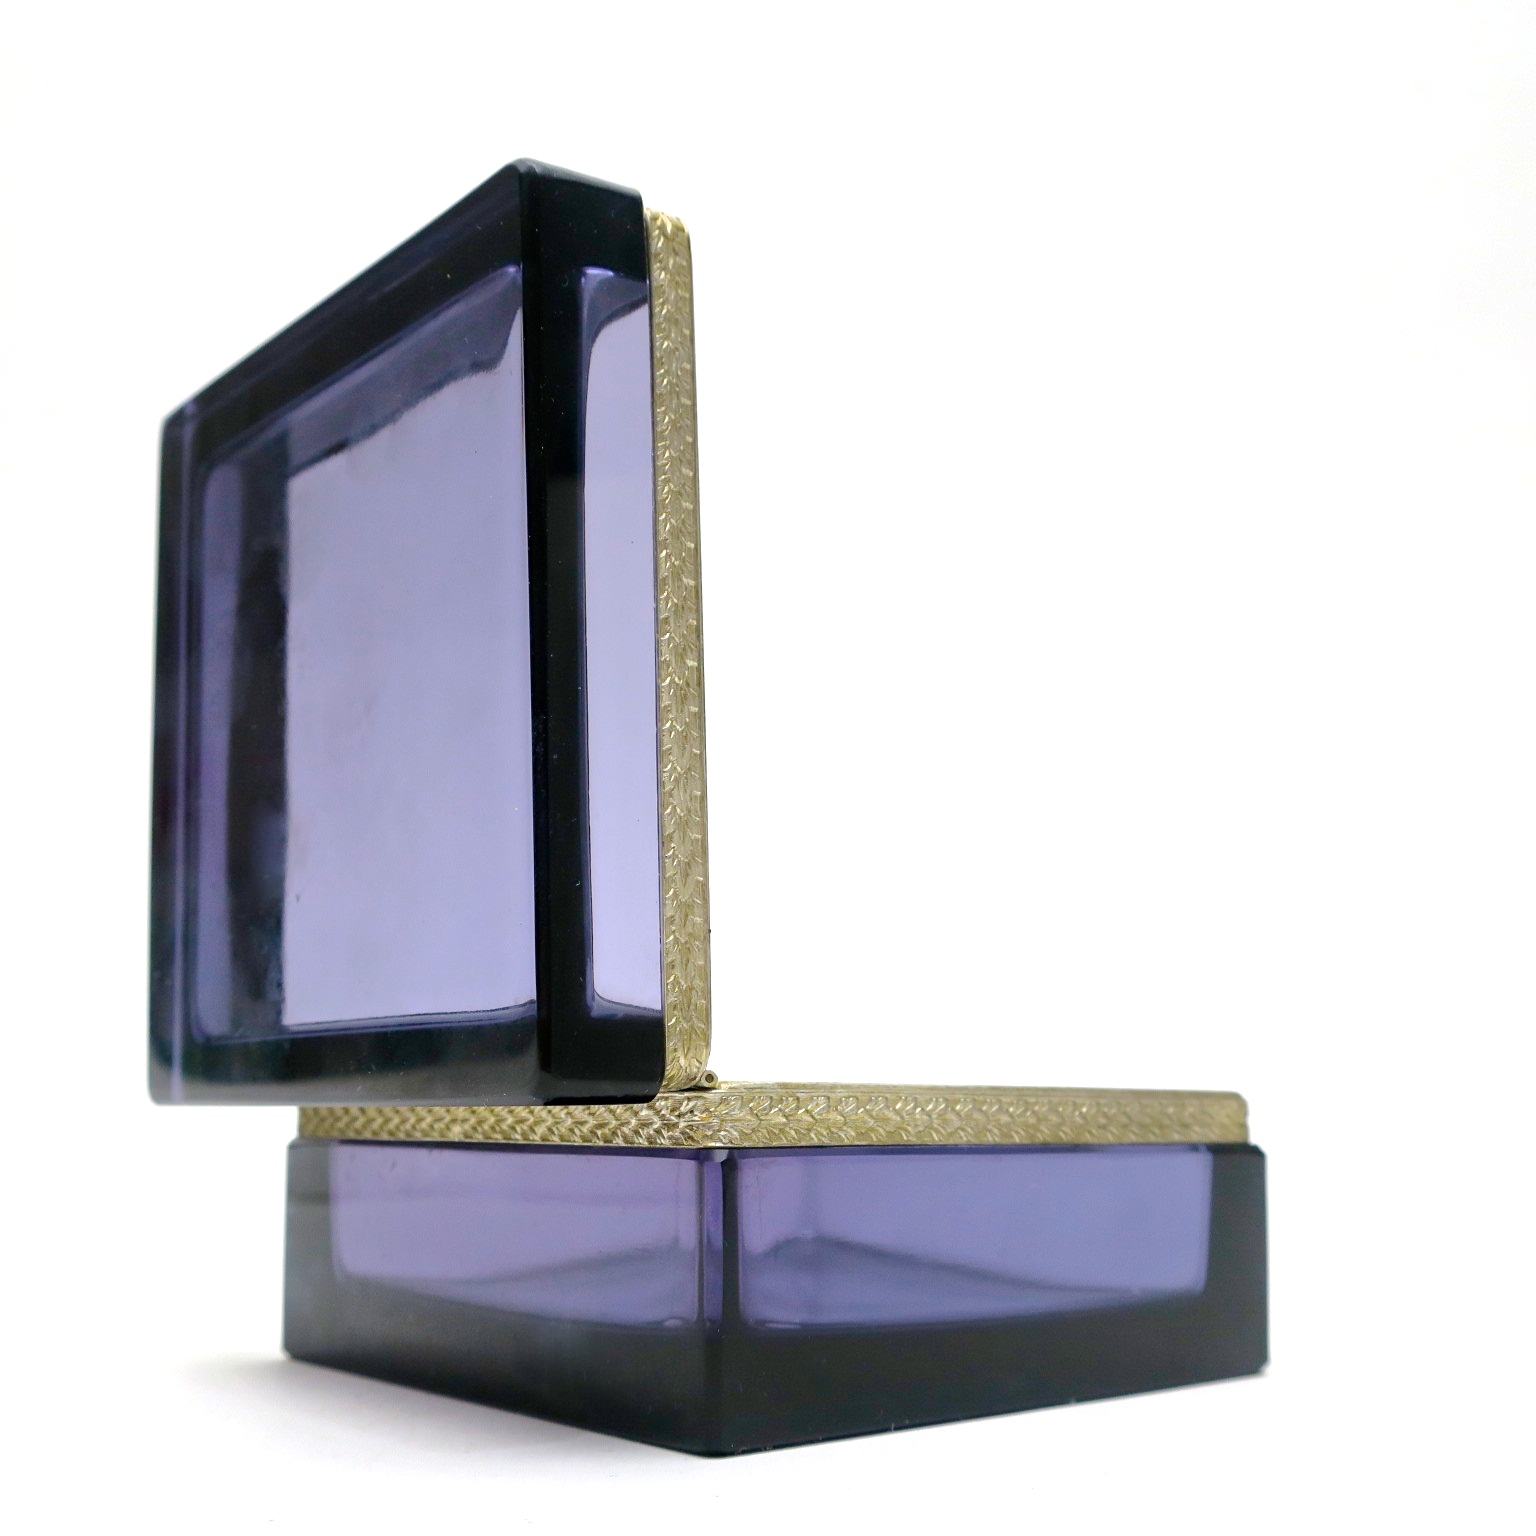 trinket box ormolu geschenk hochzeitsgeschenk kaufmuseum murano midmod midcentury noble design interior  glasdose box deckeldose inneneinrichtung purpur amethyst 